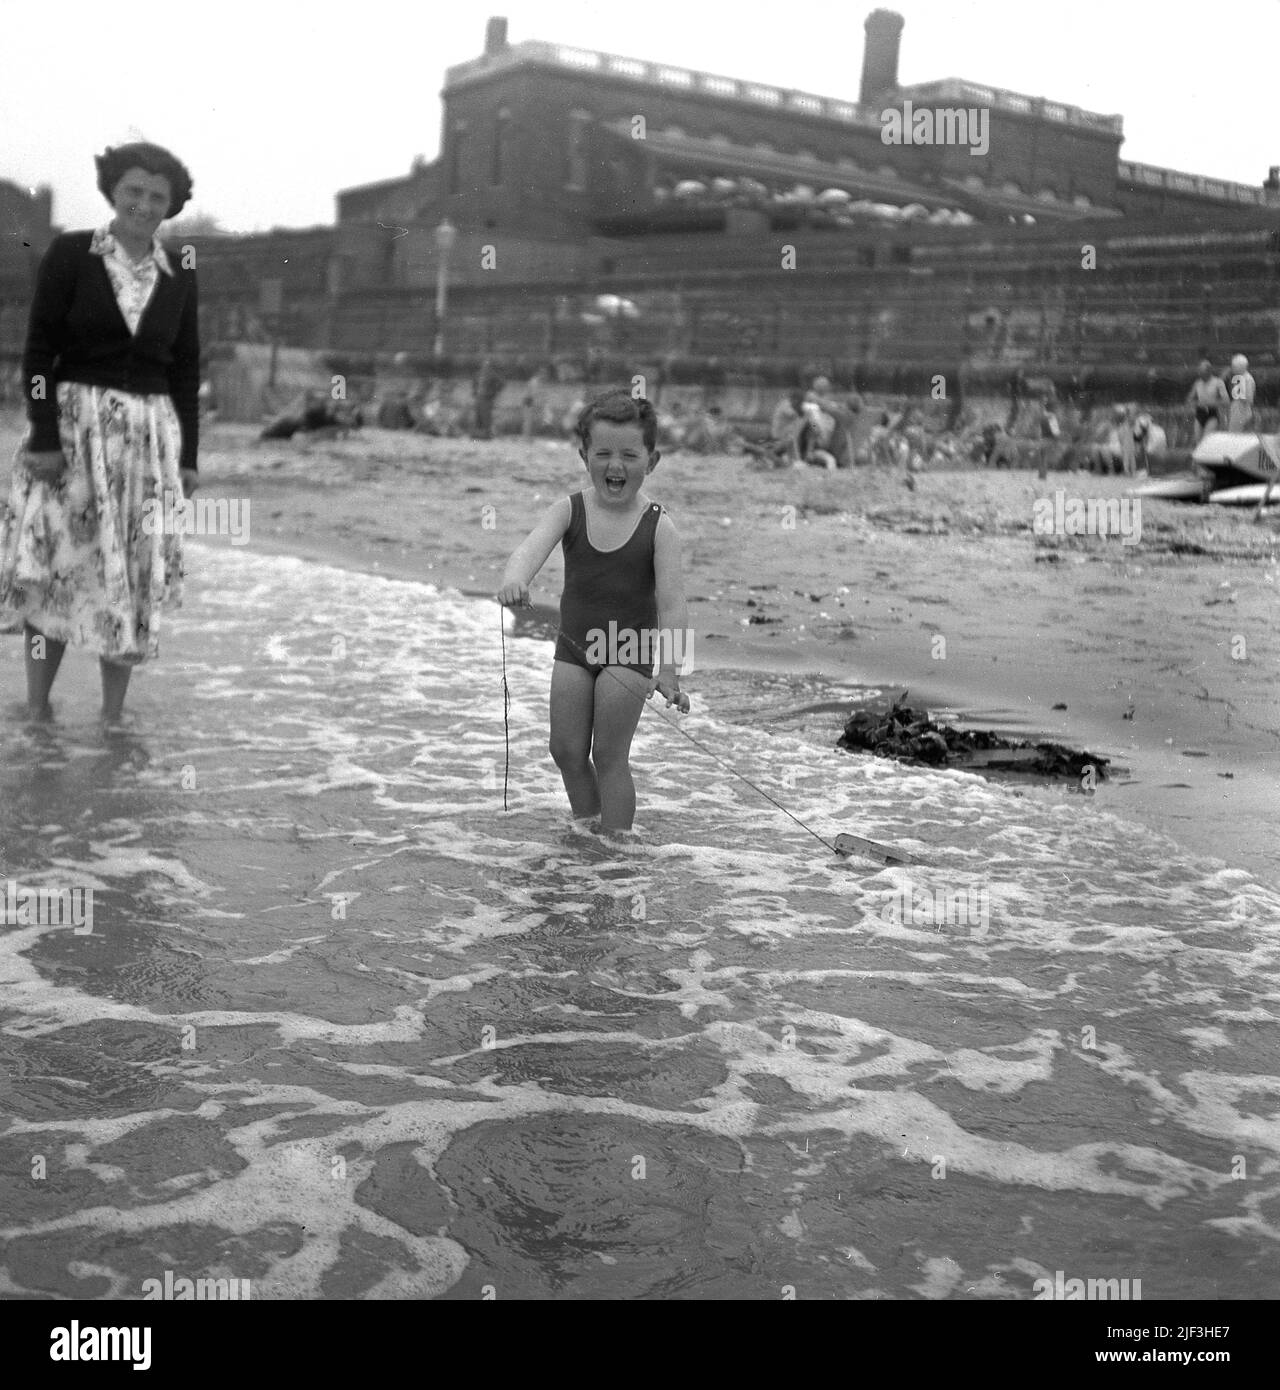 1953, historisch, eine Mutter mit ihrem kleinen Sohn im seichten Wasser am Meeresrand, mit dem kleinen Jungen stehend, der die Schnur an seinem hölzernen Spielzeugboot hält, das er durch das Wasser zieht, Margate, Kent, England, Großbritannien. Stockfoto